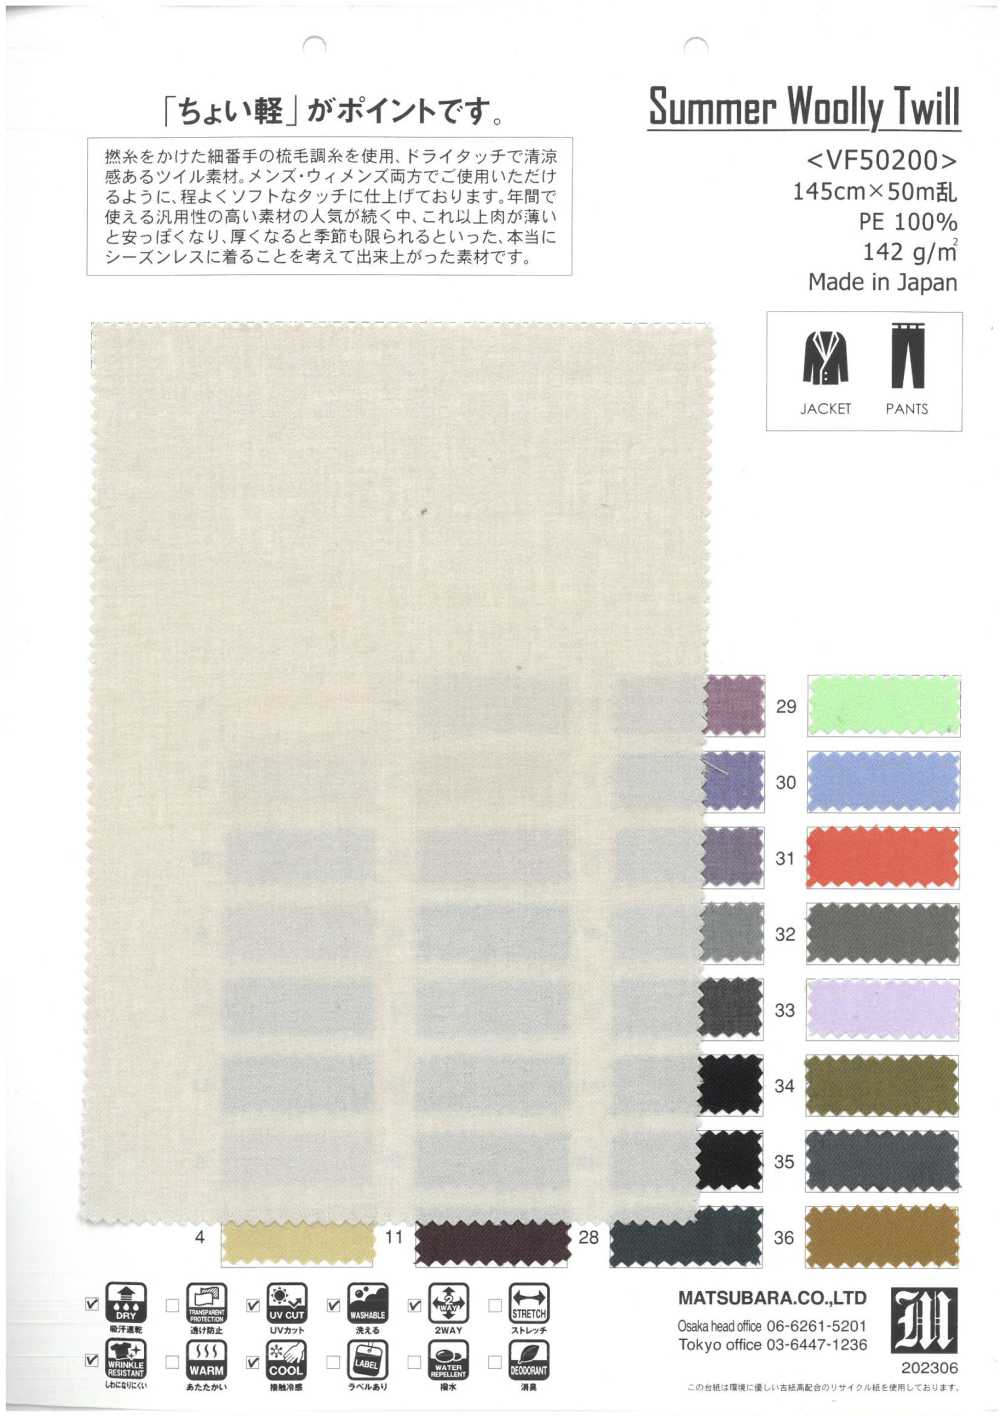 VF50200 Sarja Lã De Verão[Têxtil / Tecido] Matsubara